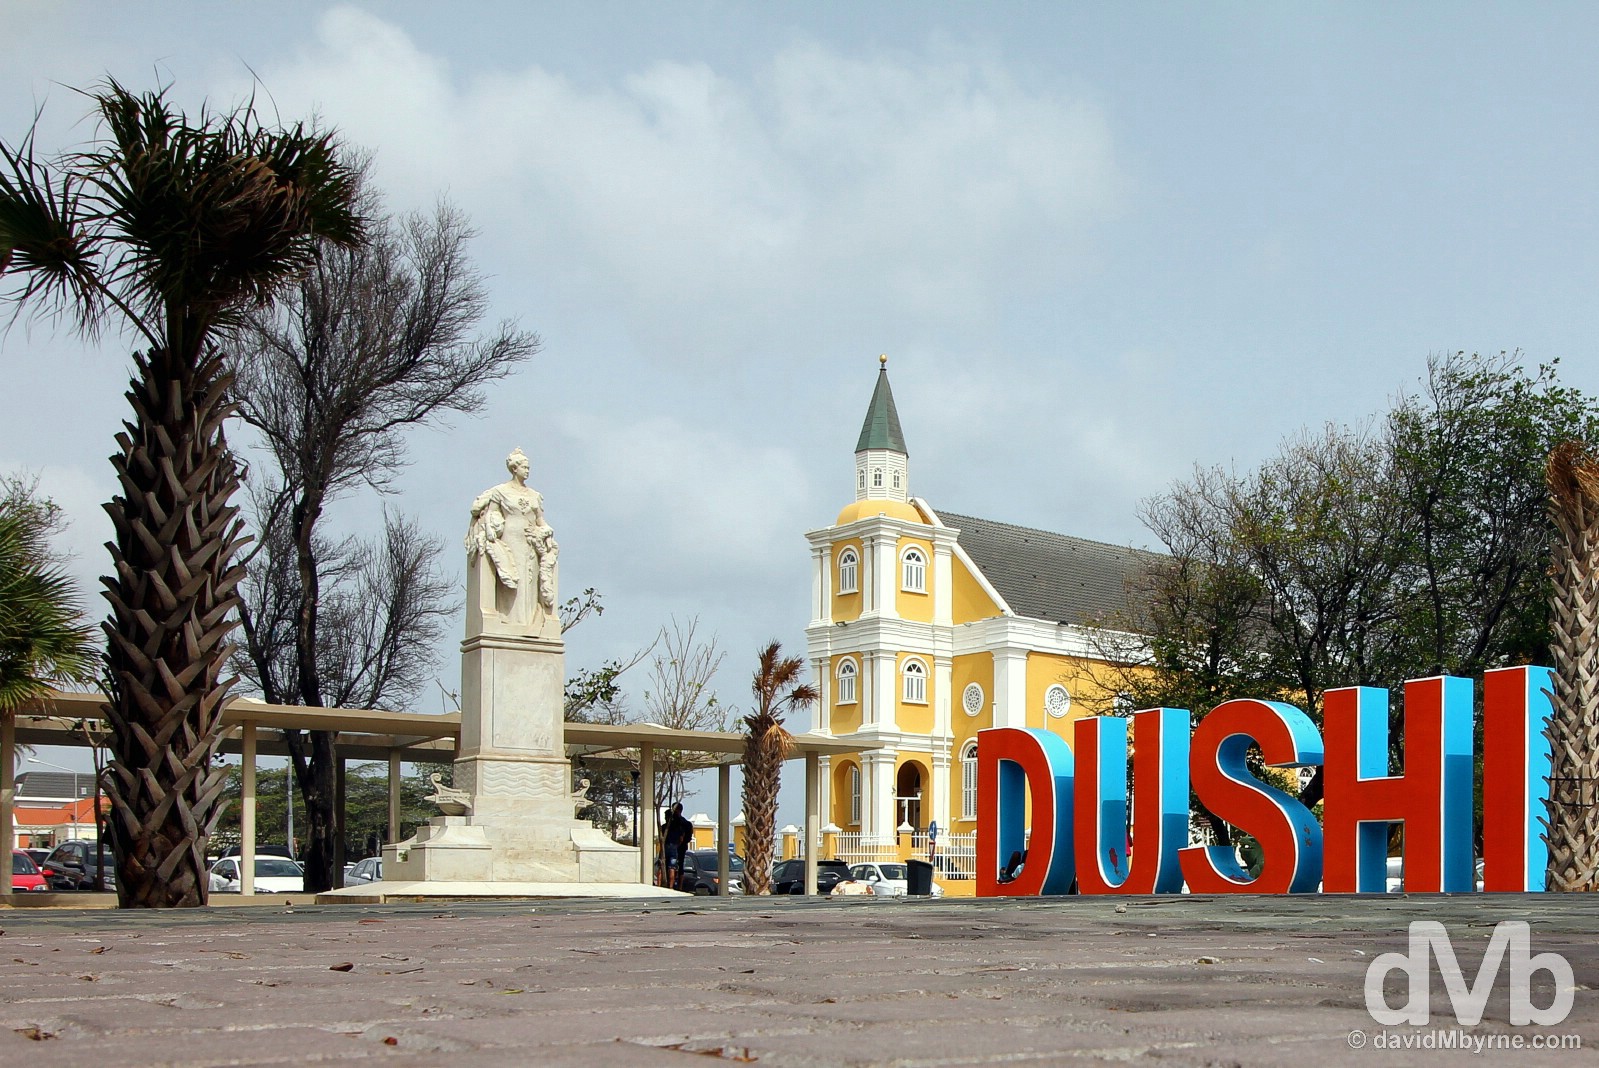 DUSHI. Wilhelminaplein, Willemstad, Curacao, Lesser Antilles. June 19, 2015.